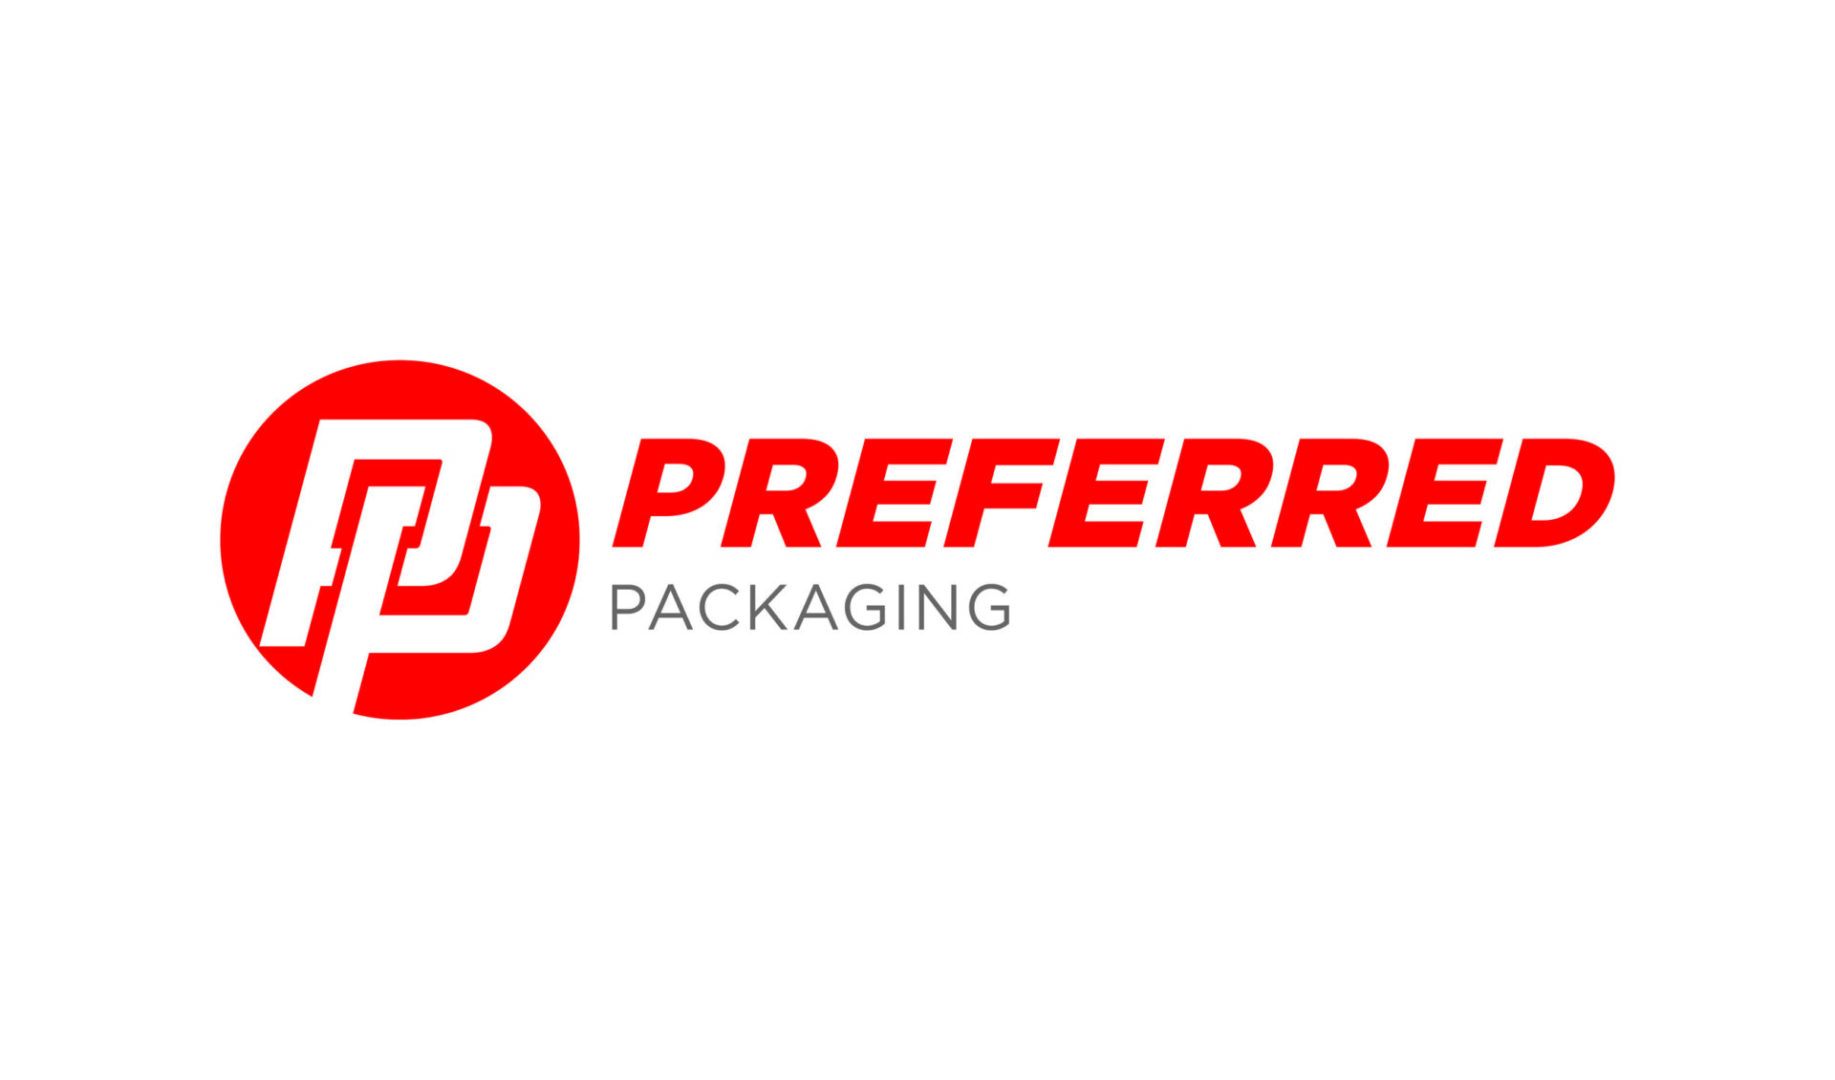 Tru+Packaging_Logos_Preferred+Packaging_V3